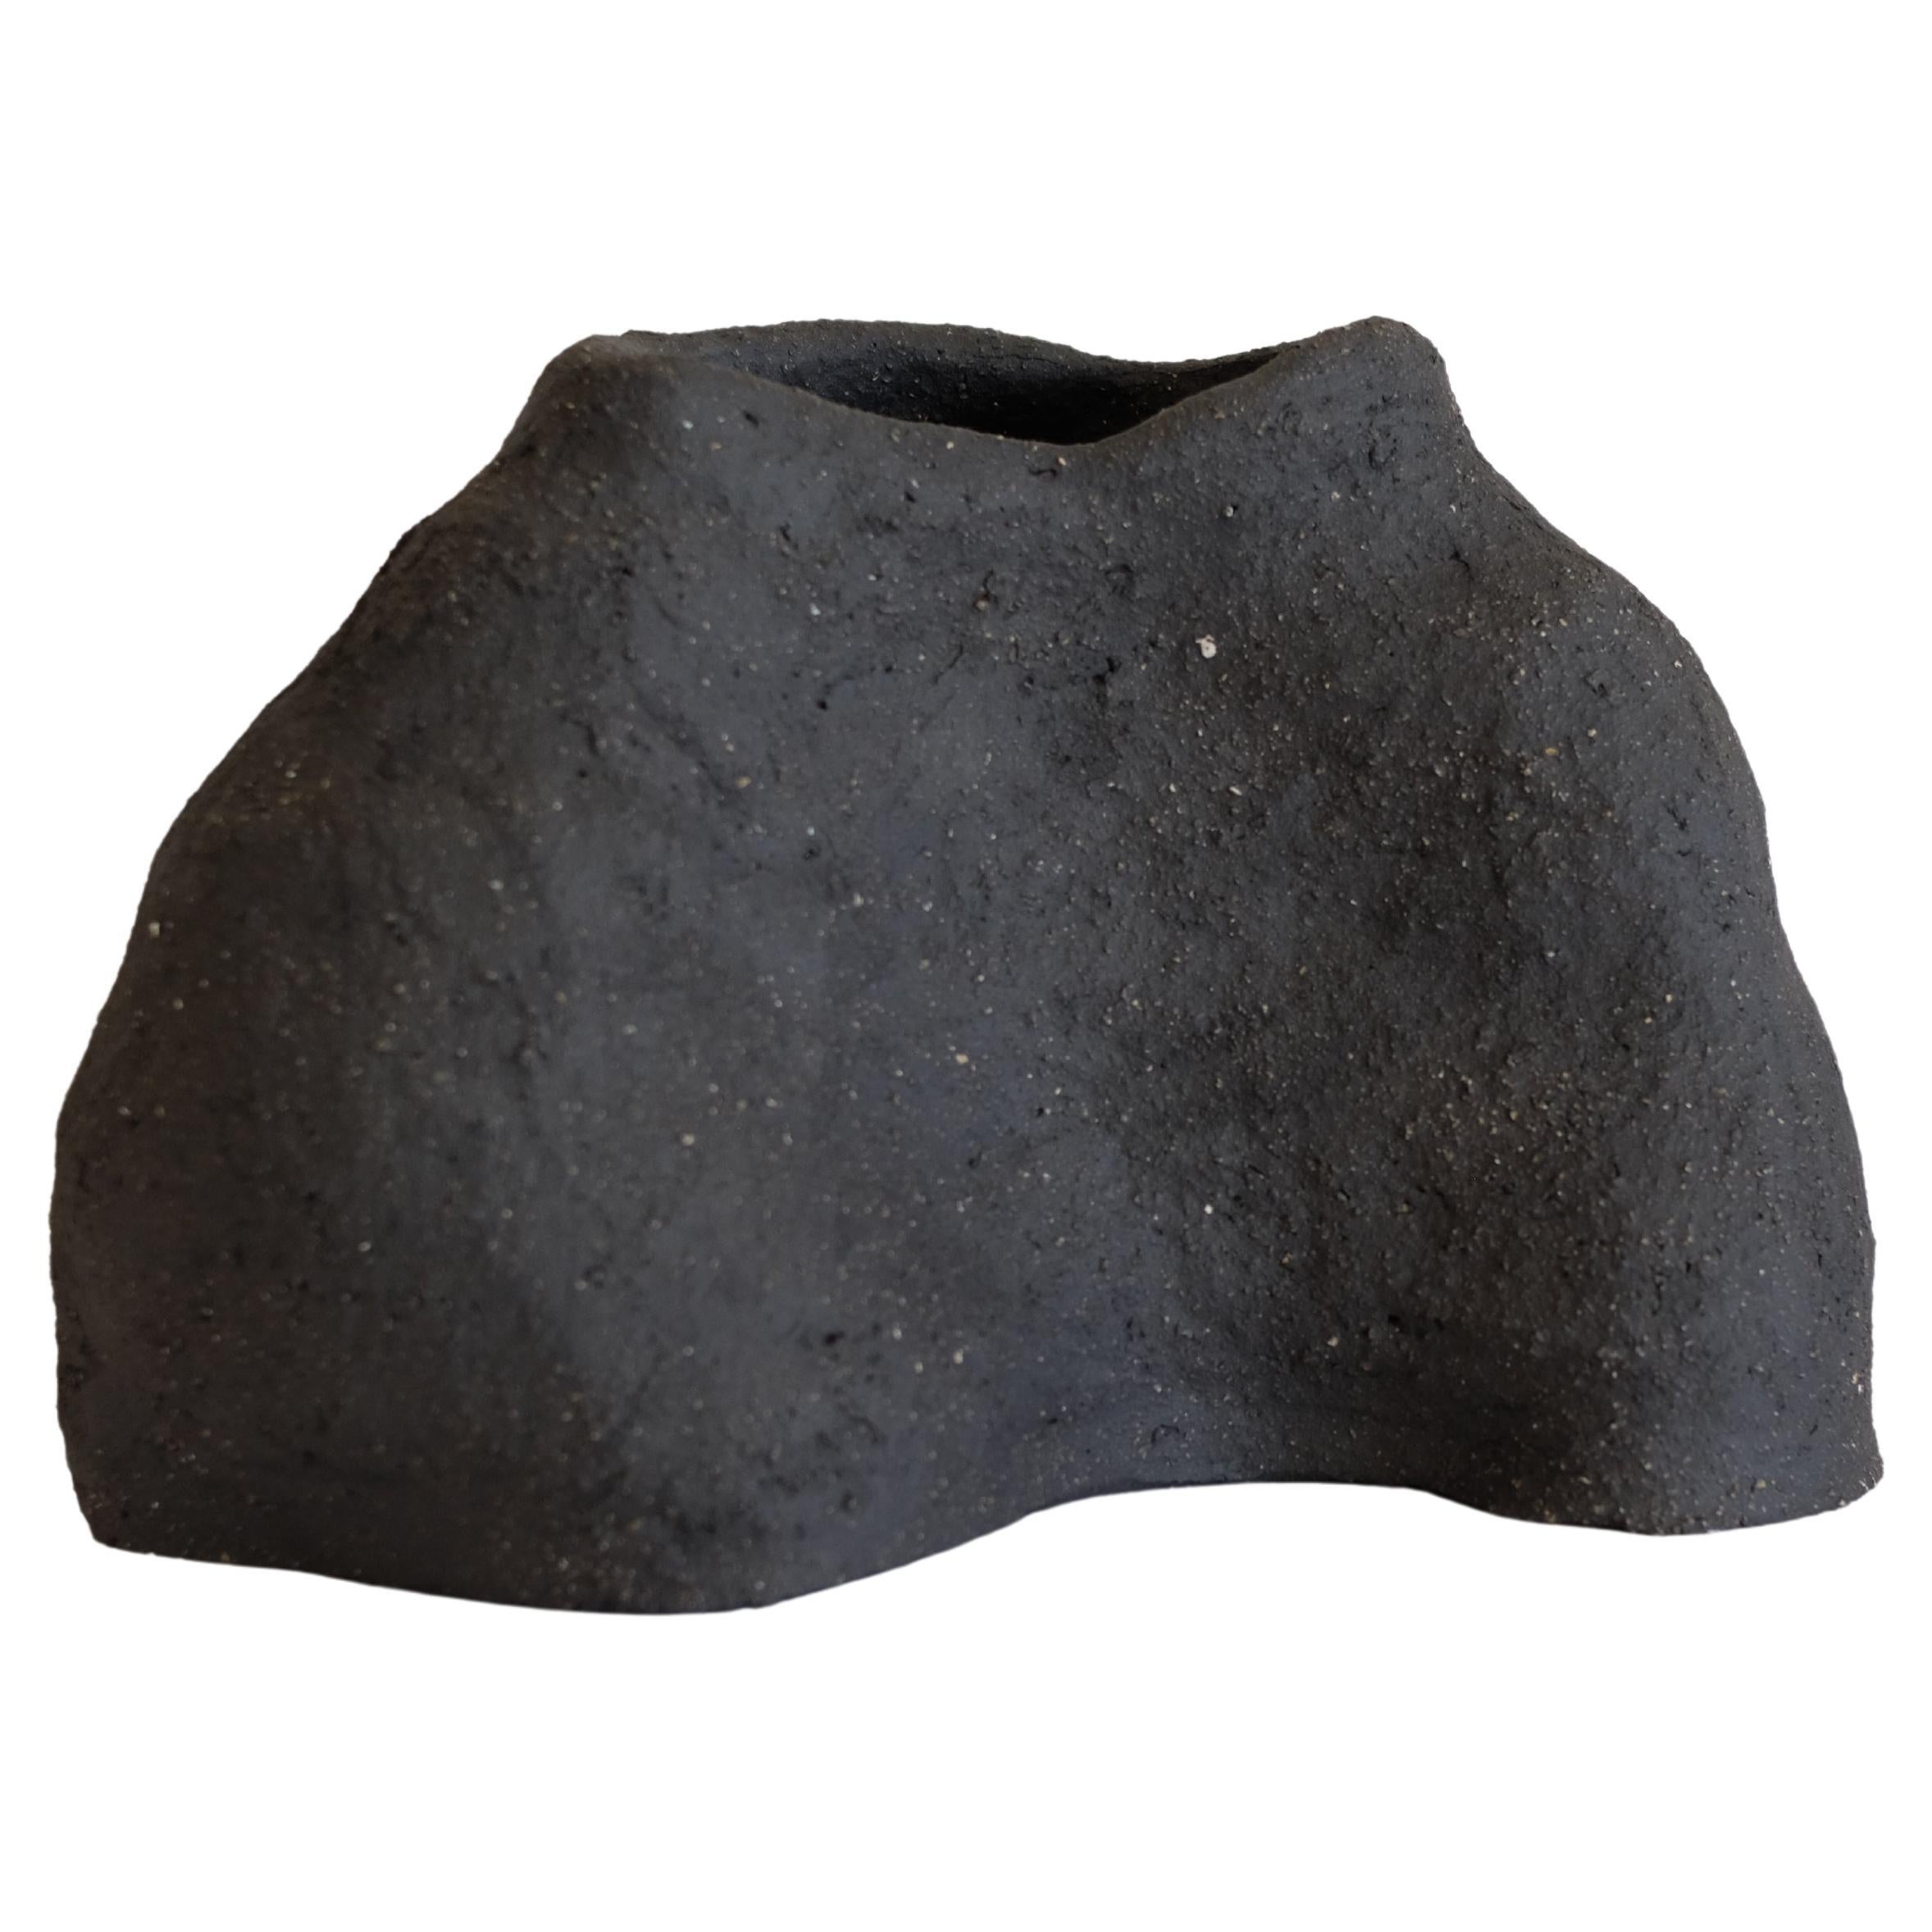 Mond-Granat II-Vase von Sophie Parachey